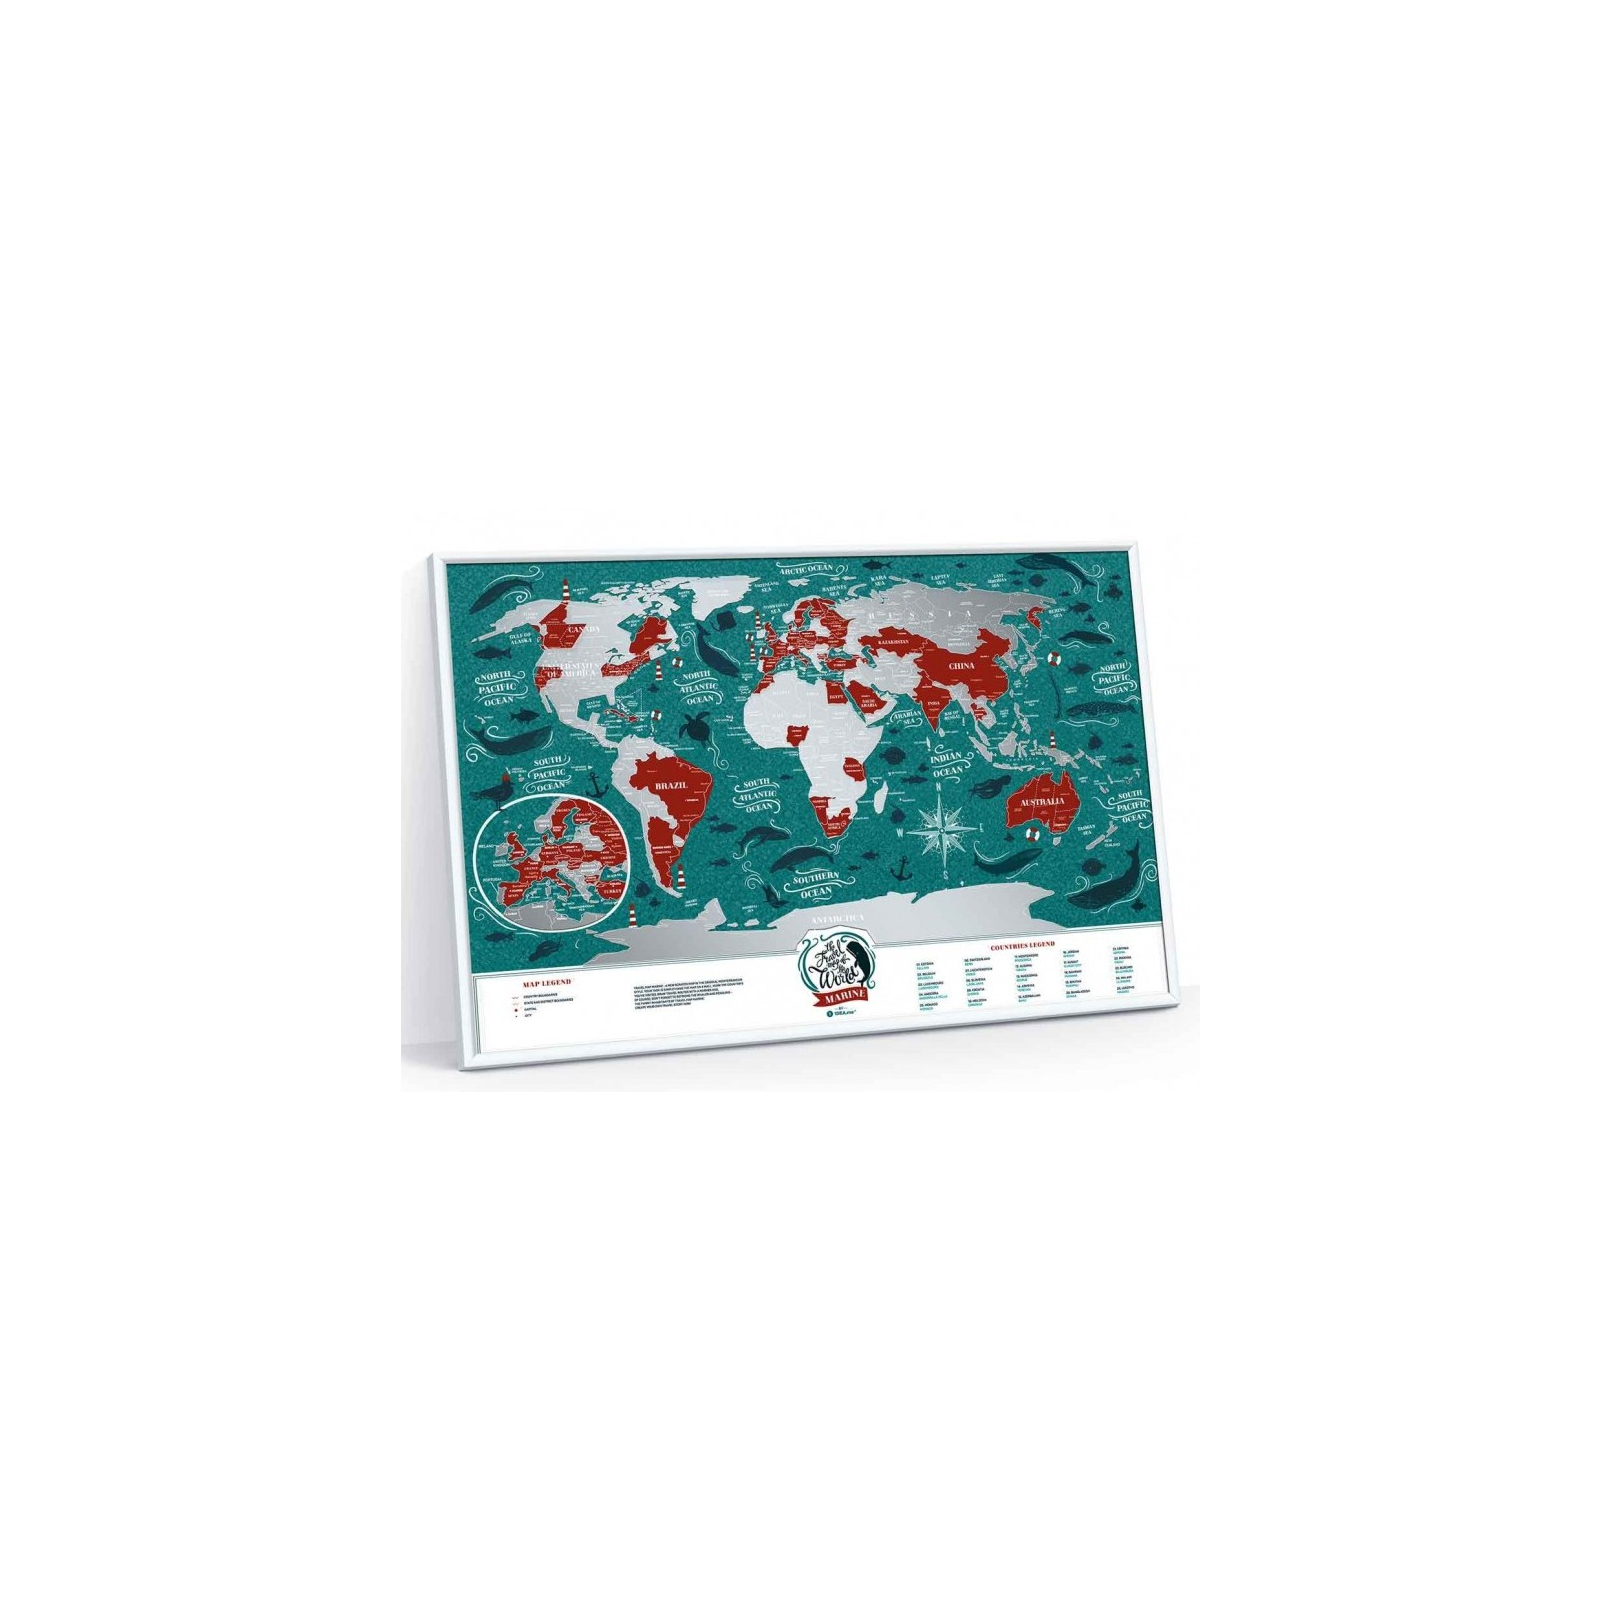 Скретч карта 1DEA.me Travel Map Marine World (13020) изображение 4